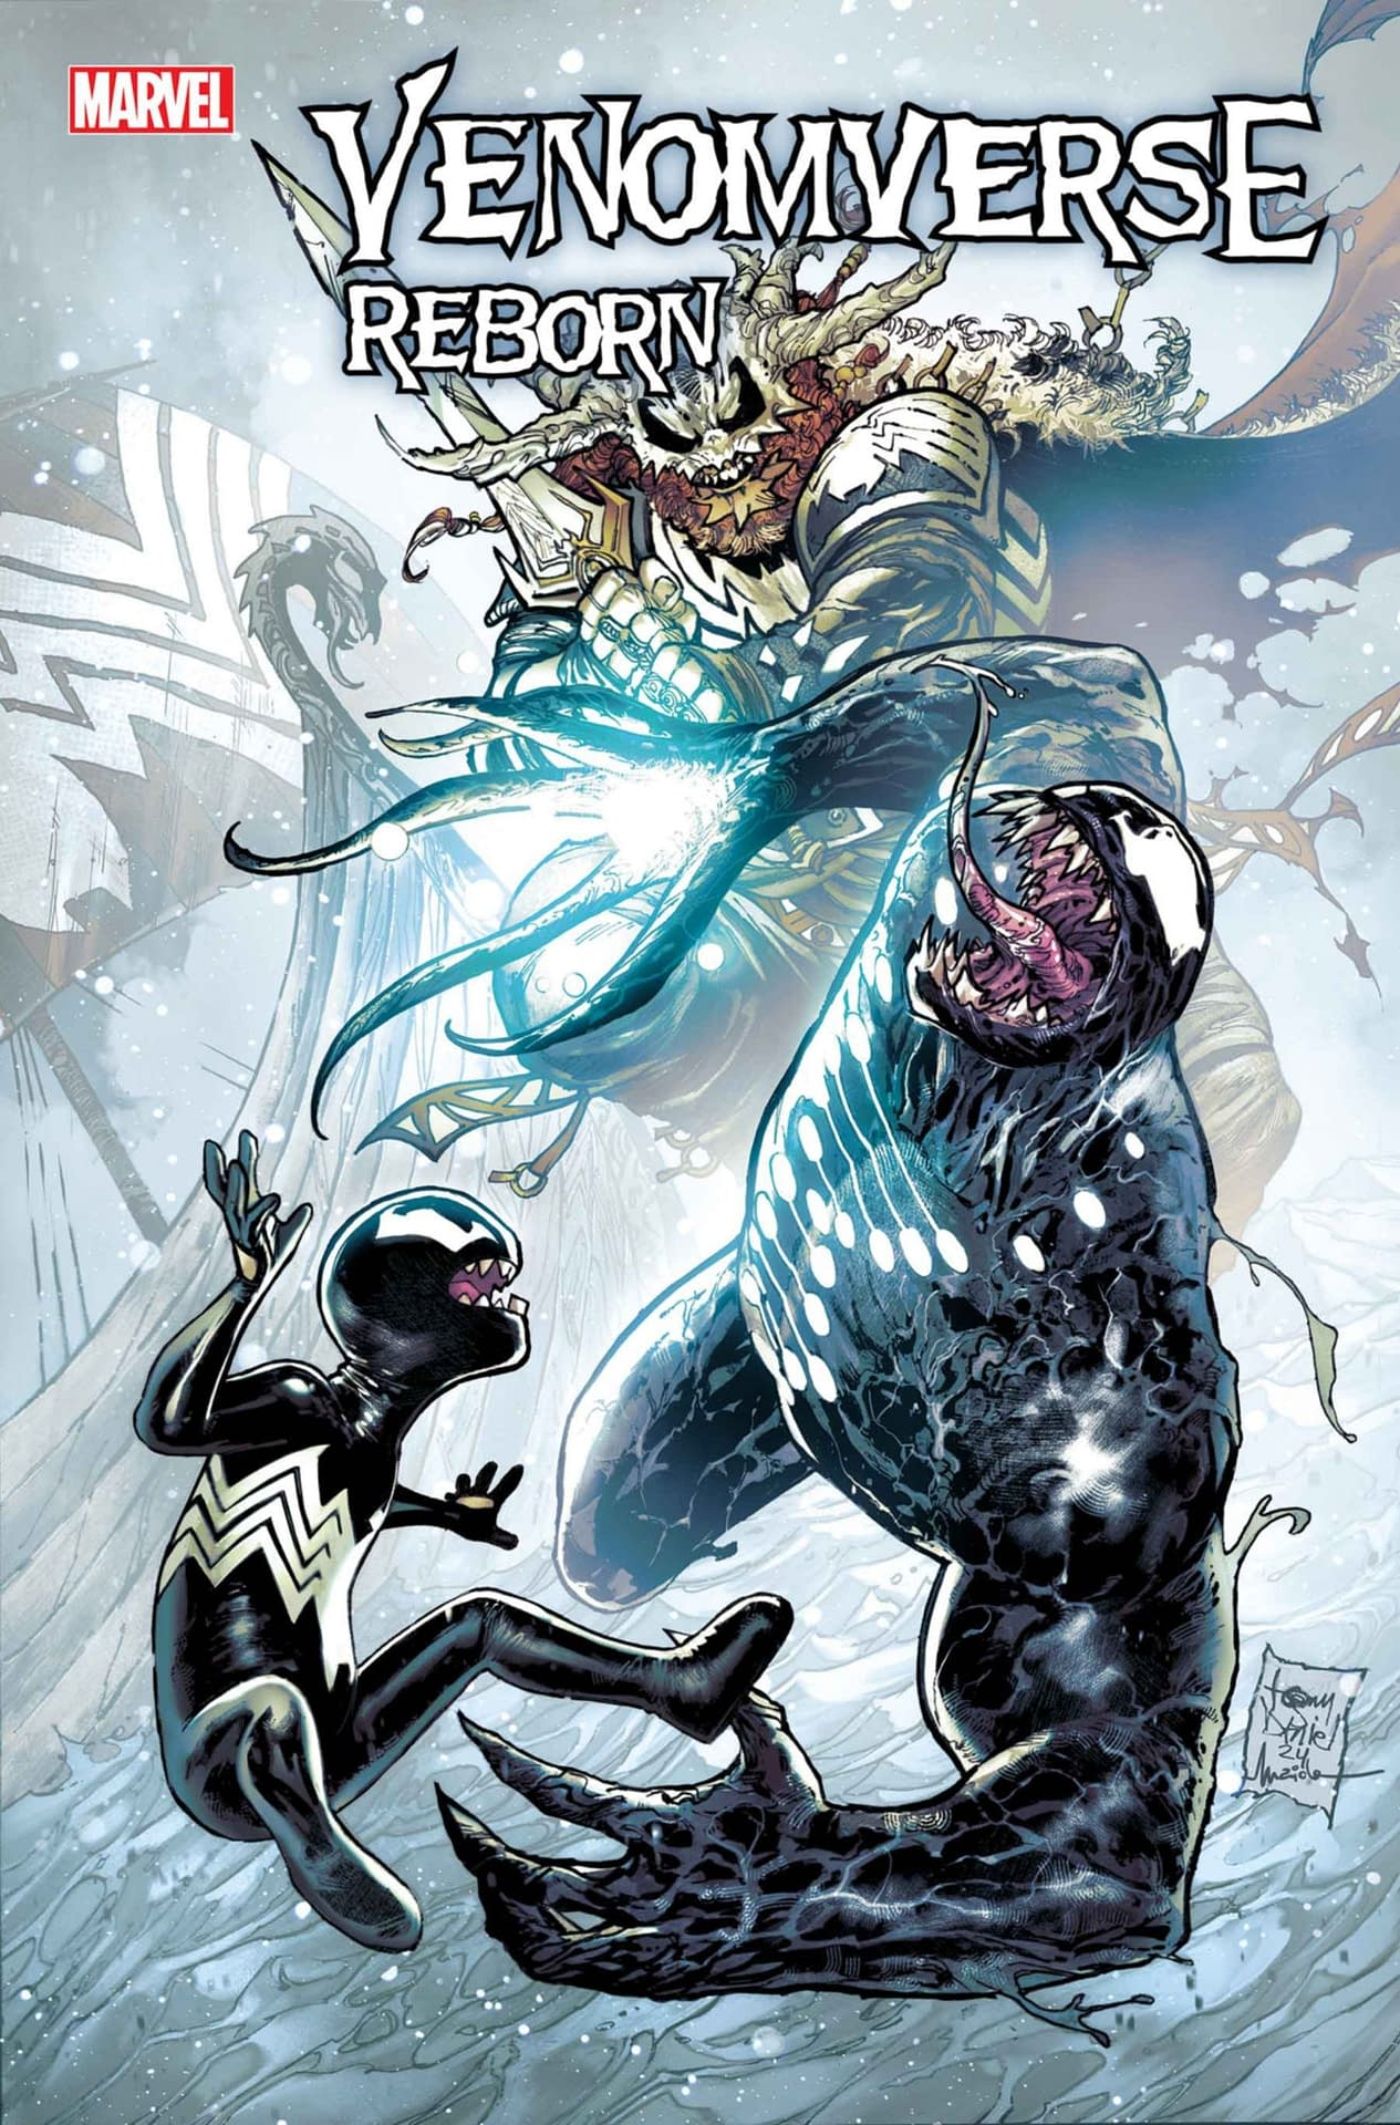 Capa de Venomverse Reborn #2 apresentando Kid Venom e Venom de Venom: The End.